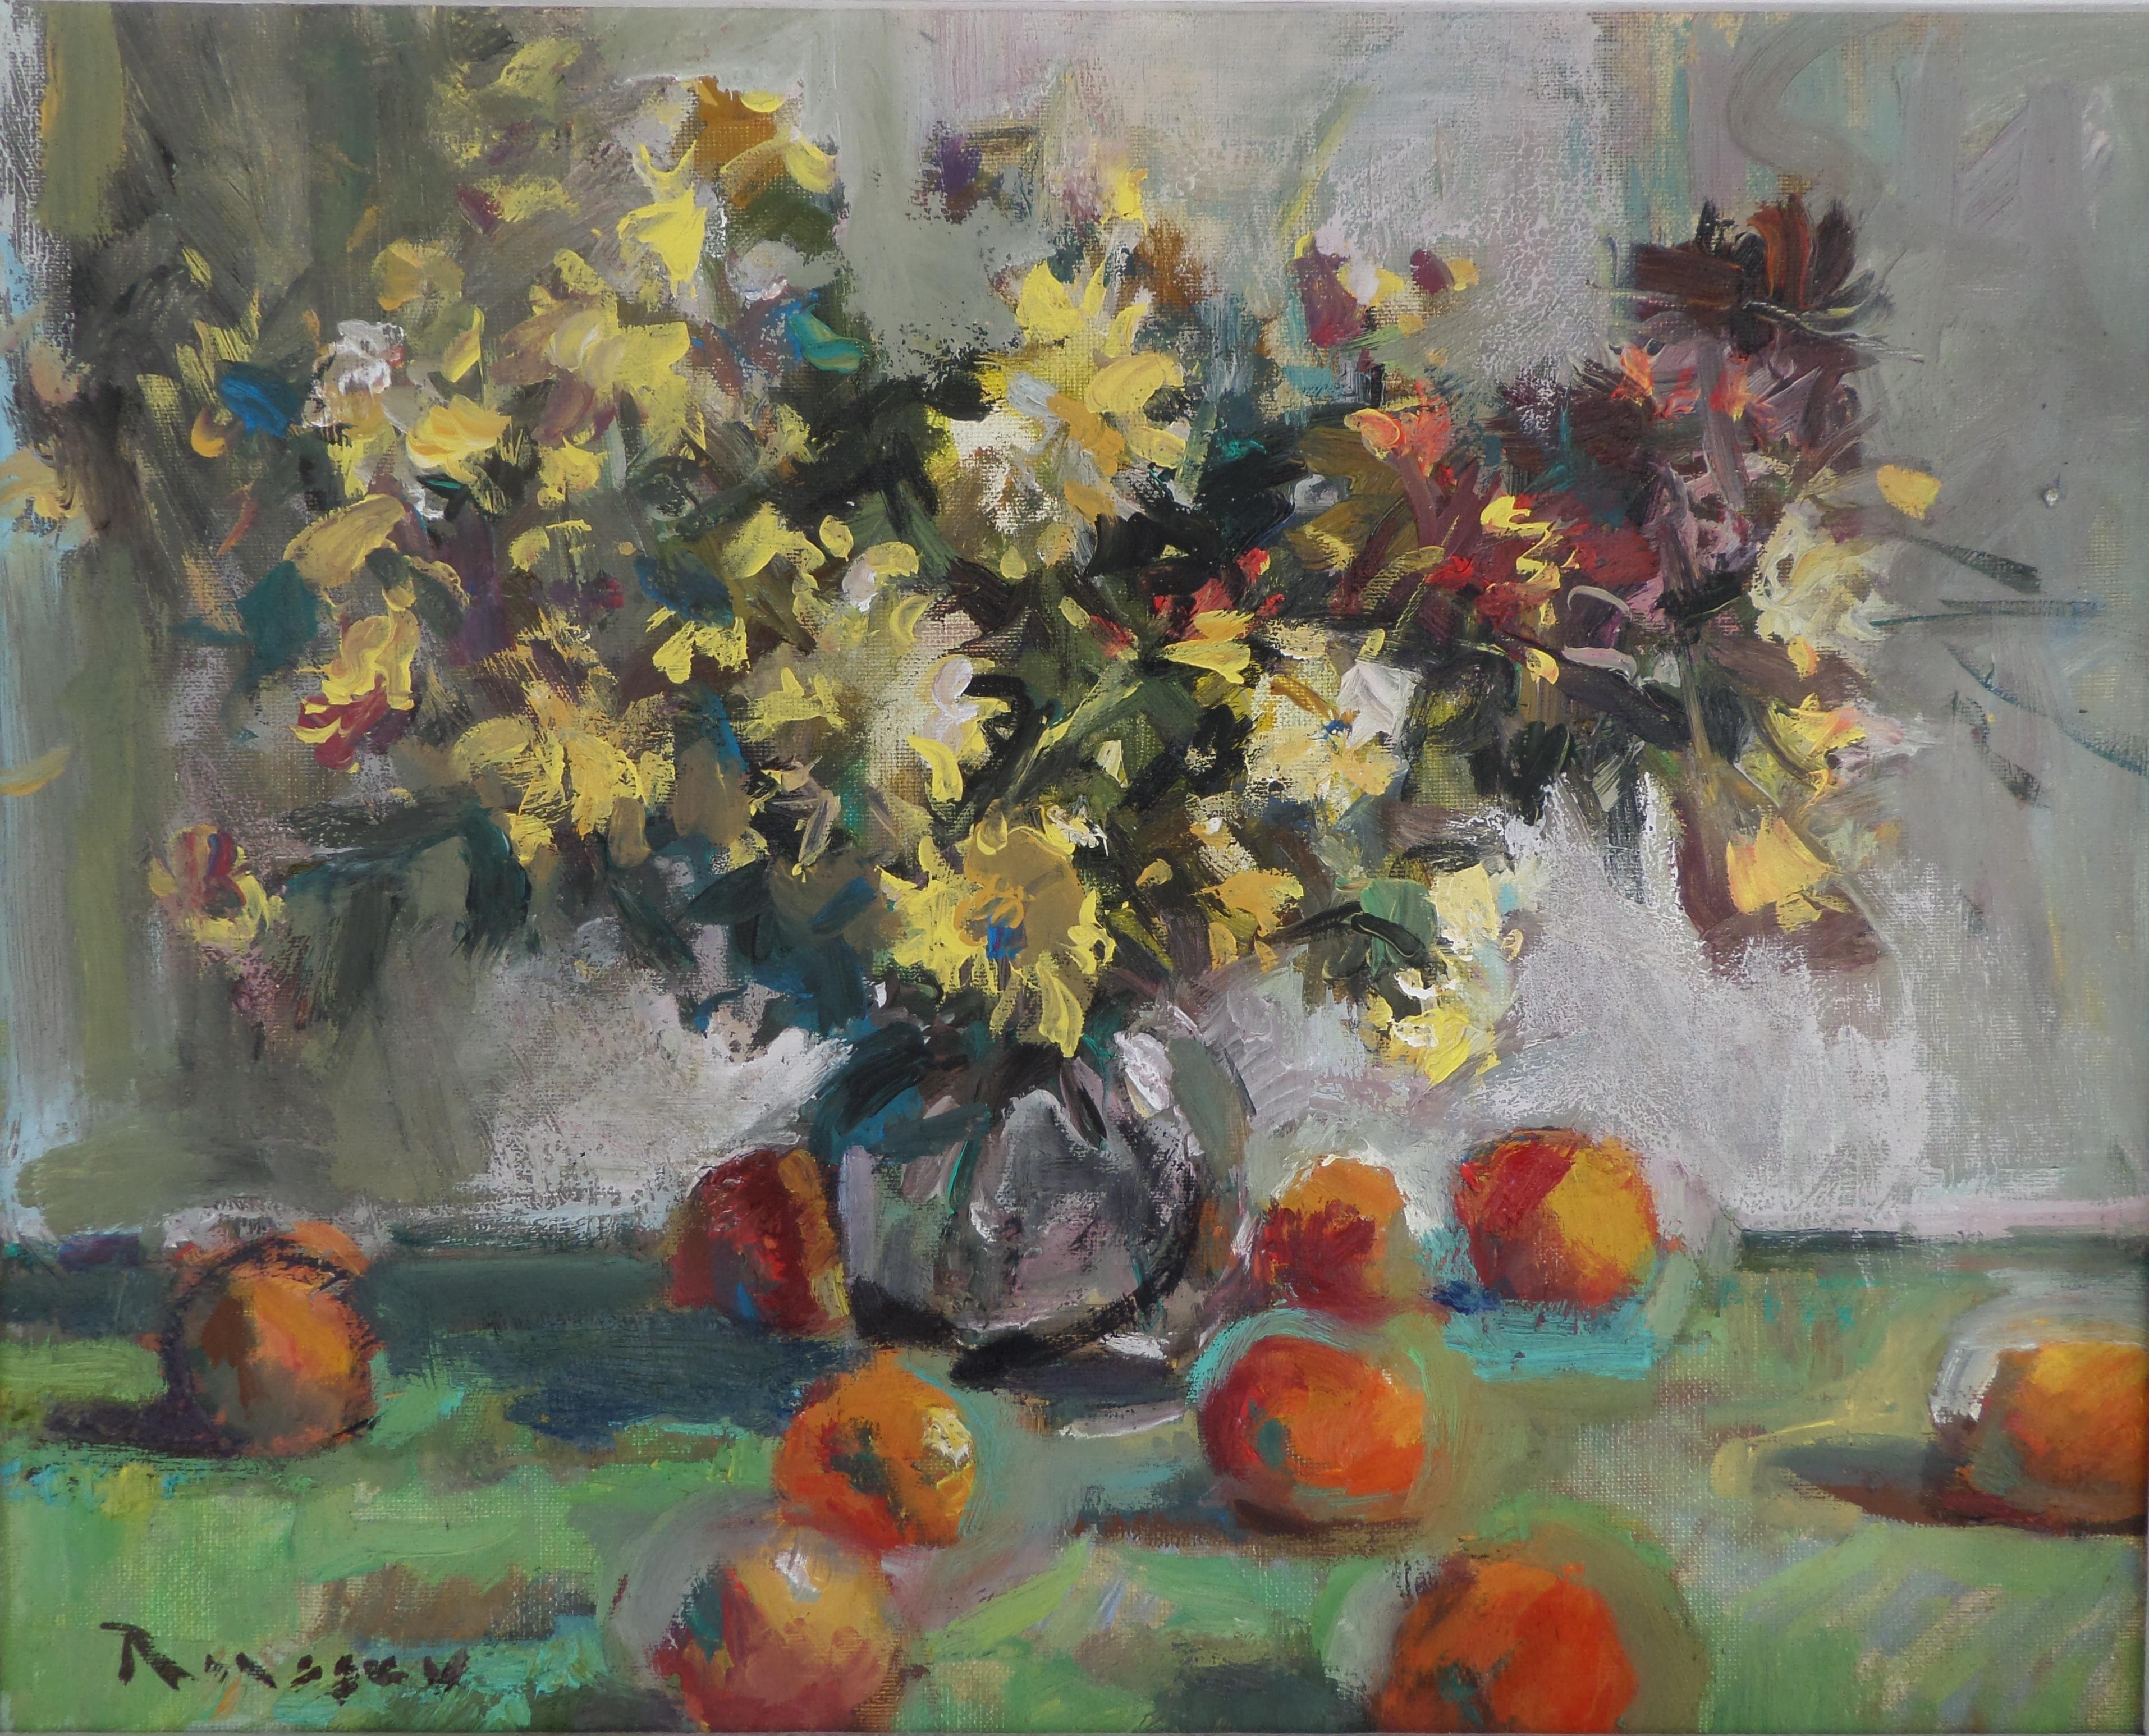 Ivan Roussev Landscape Painting – Blumen und Früchte - Stillleben Ölgemälde Grün Rot Weiß Gelb Braun Orange